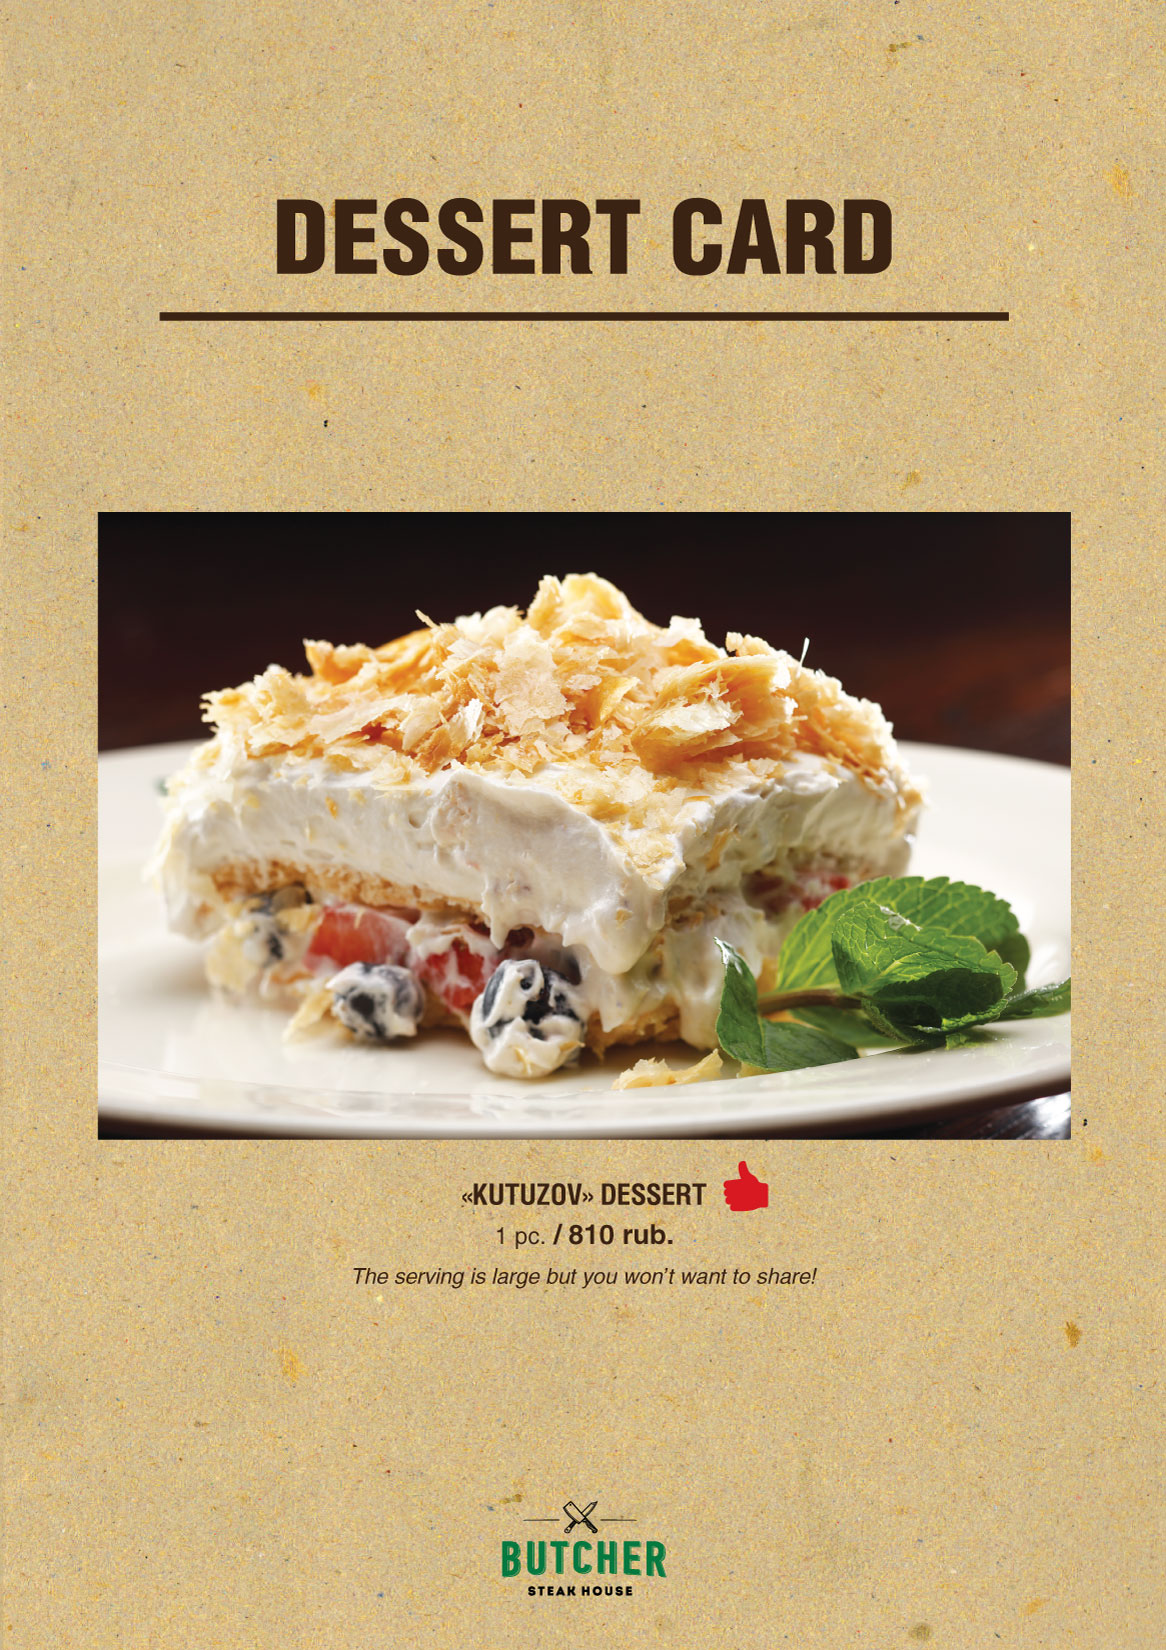 Dessert card